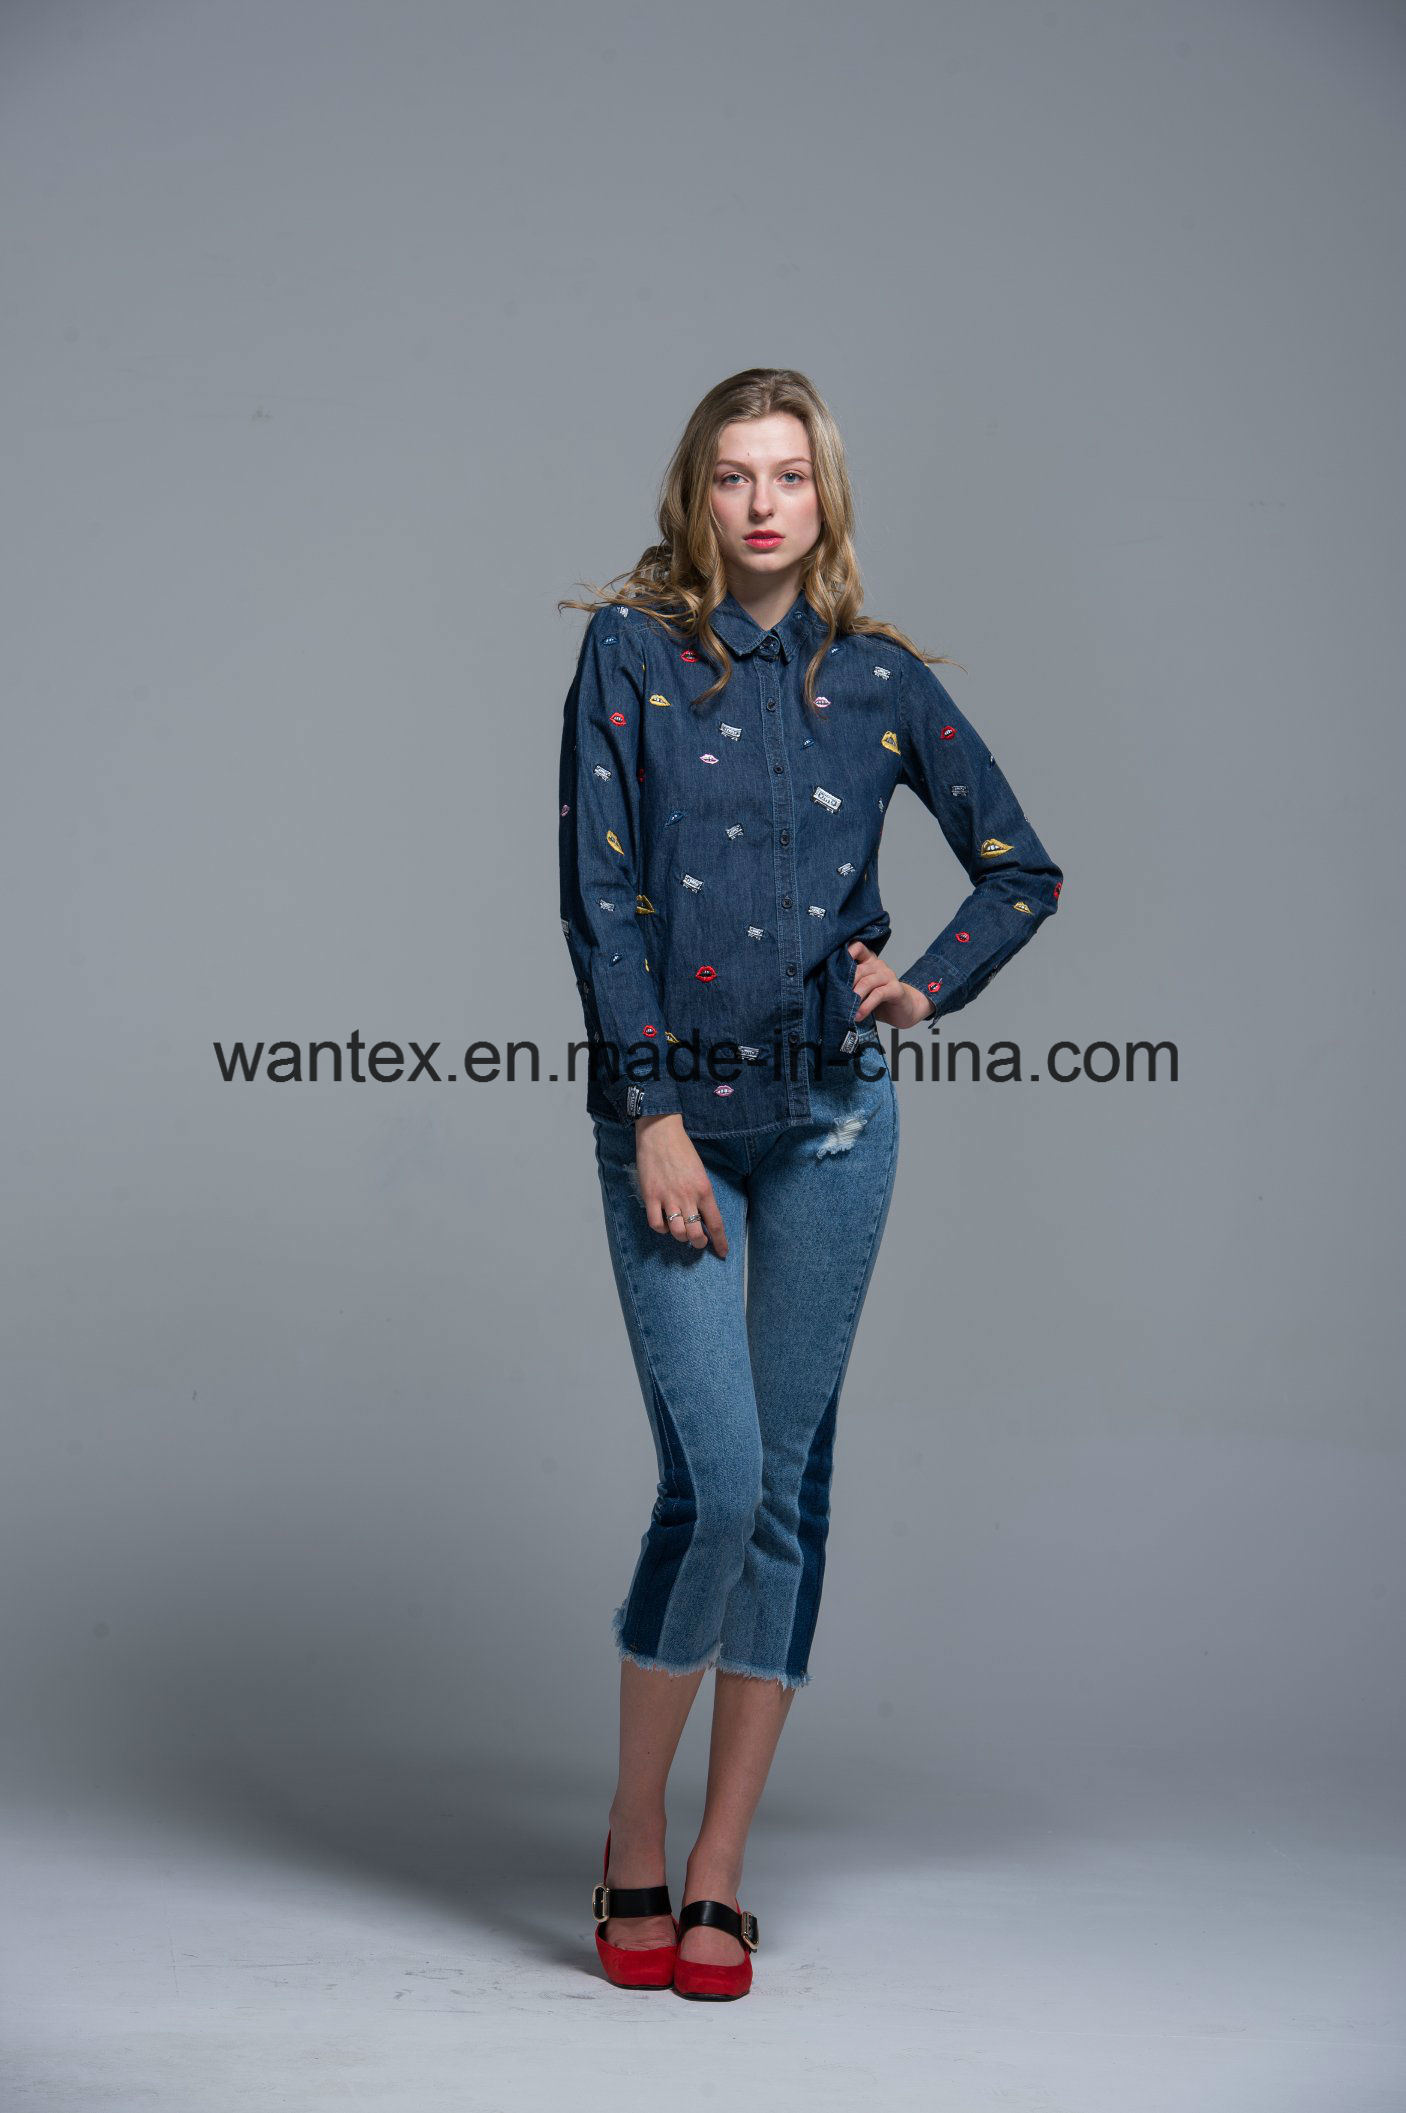 Ladies Blouse 100% Cotton Fashion Shirt Fashion Top Autumn Spring Jean